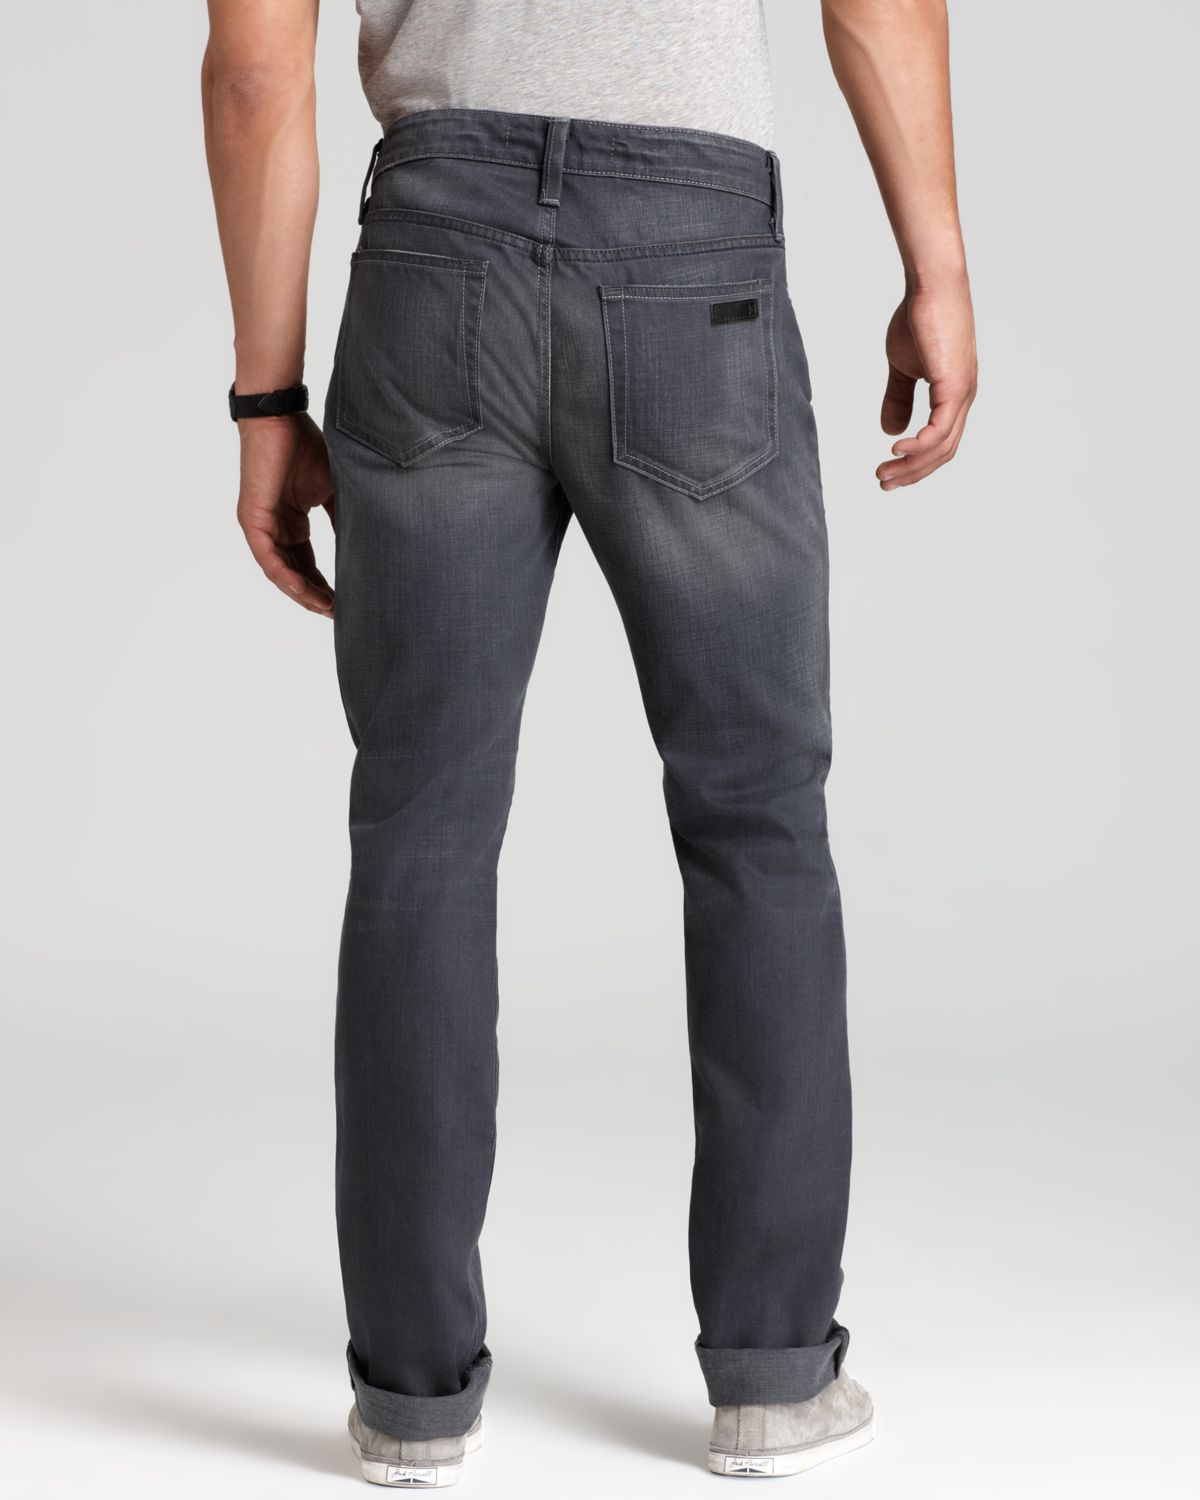 Lyst - Joe'S Jeans Brixton Slim Straight Fit Jeans in Eldridge in Gray ...